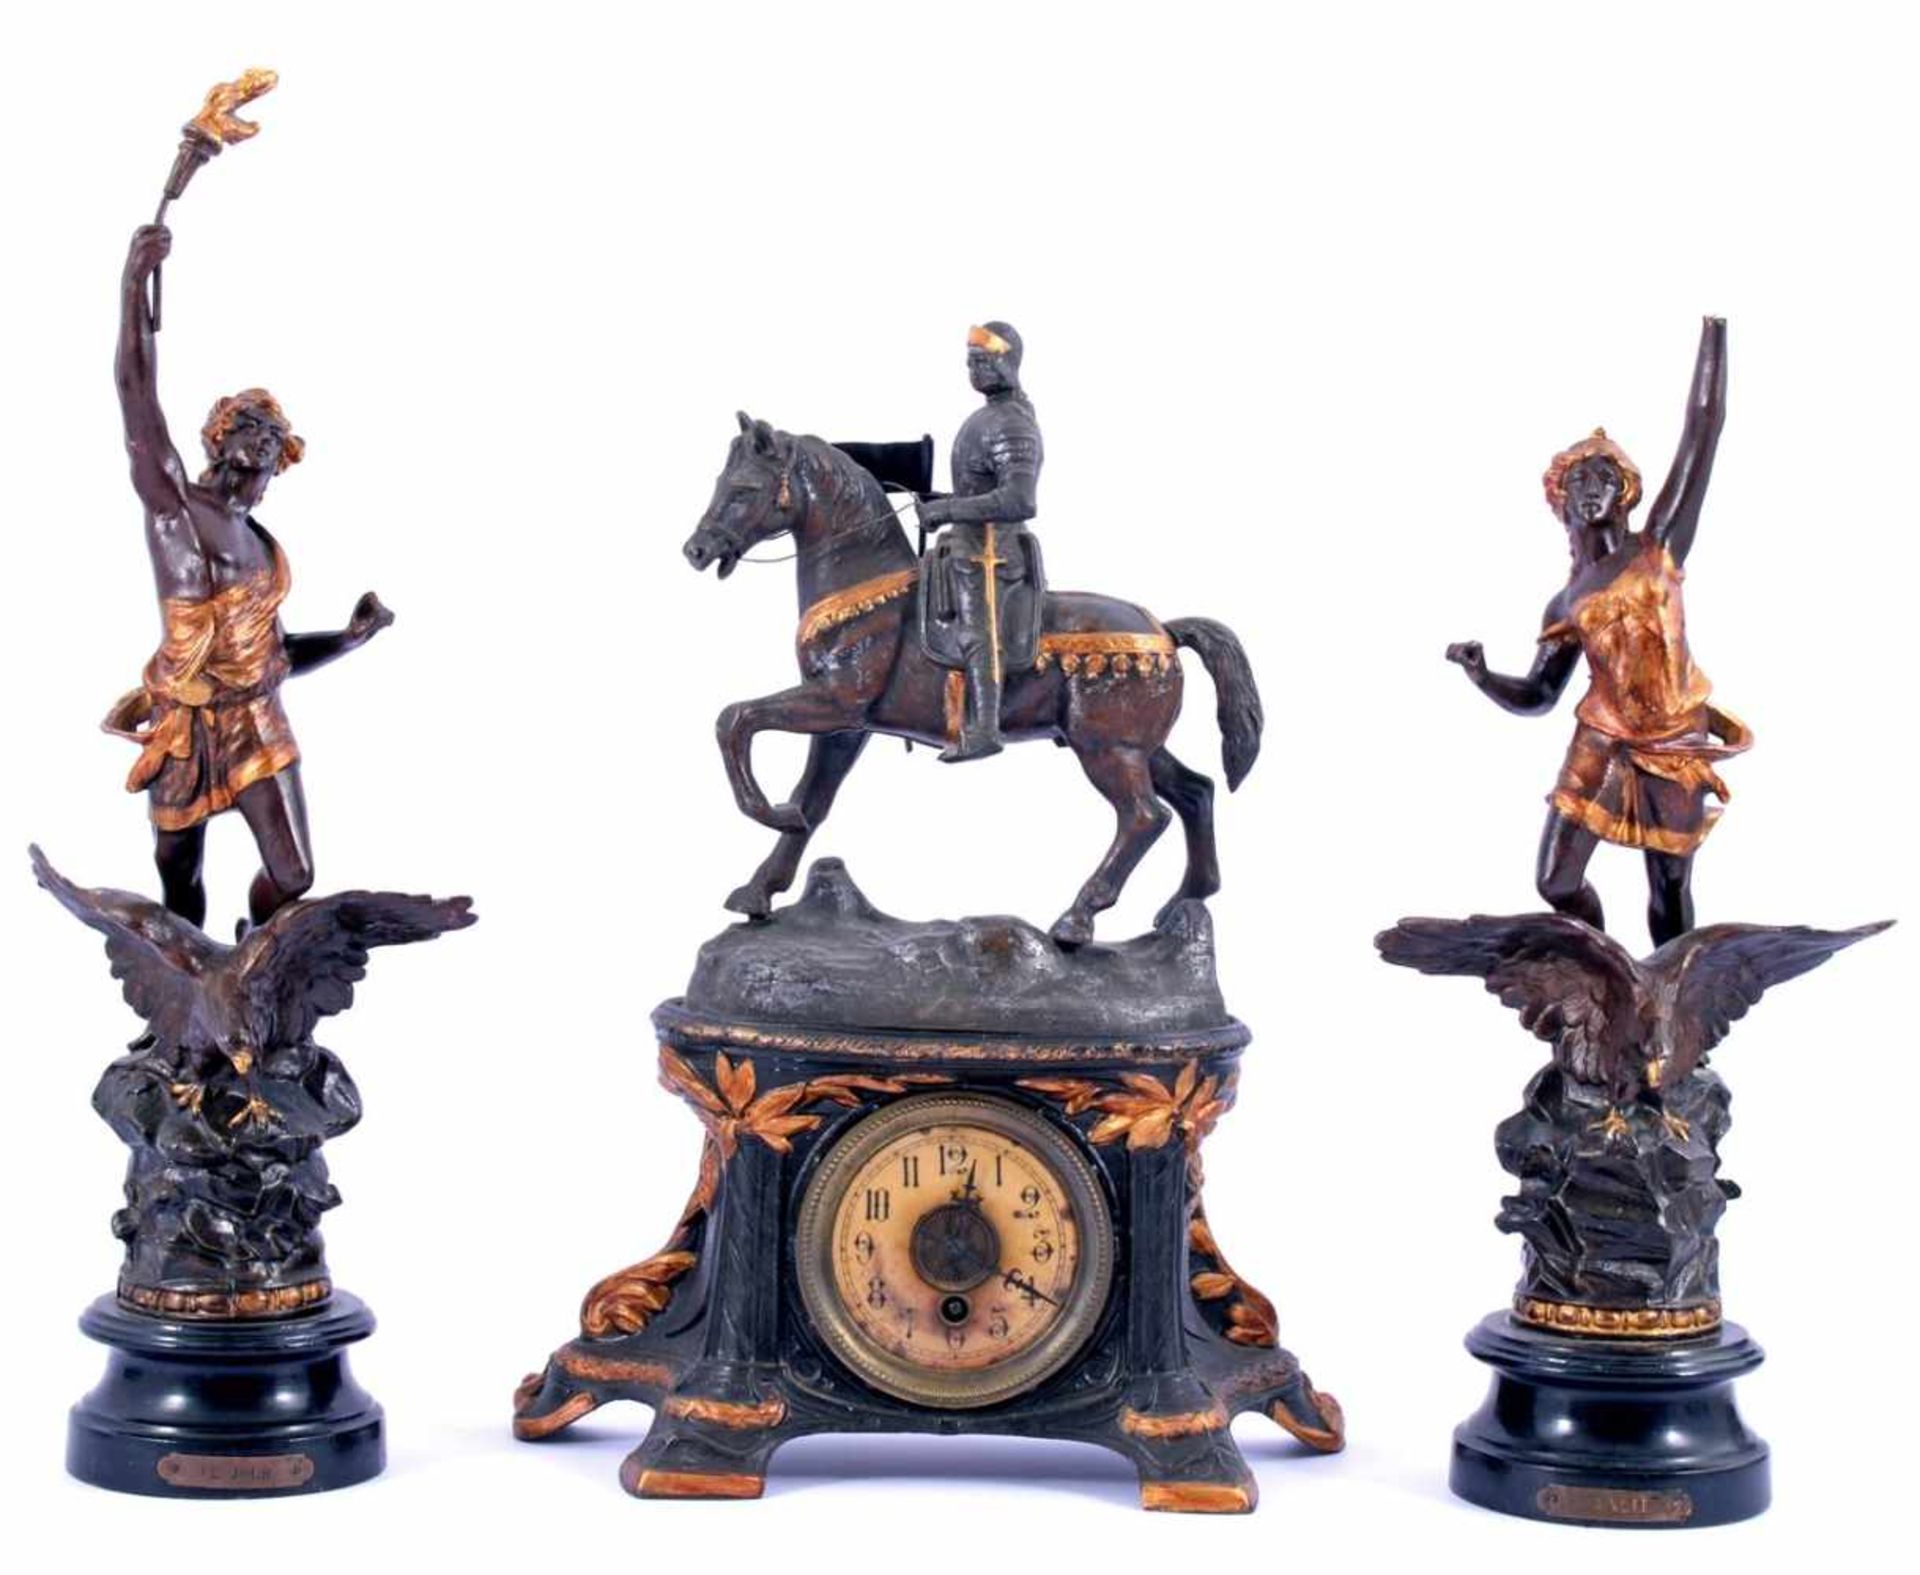 Zamak pendulestel bestaande uit pendule met ridder te paard op top 42 cm hoog, 31 cm breed en 2